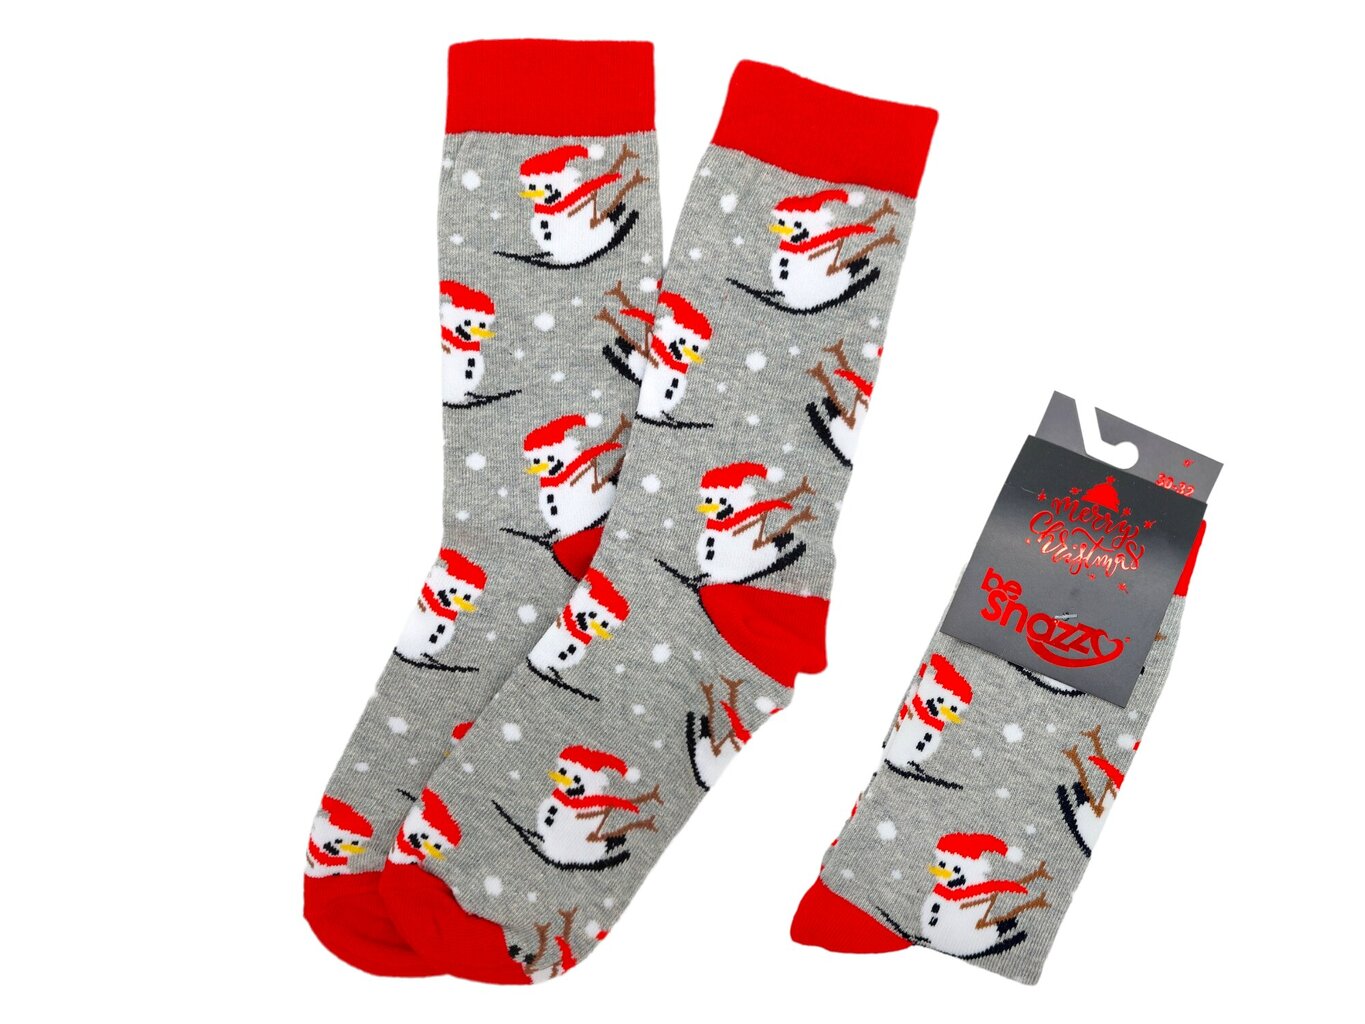 Kalėdinės kojinės visai šeimai Be Snazzy SKCH-01 Merry Christmas kaina |  pigu.lt